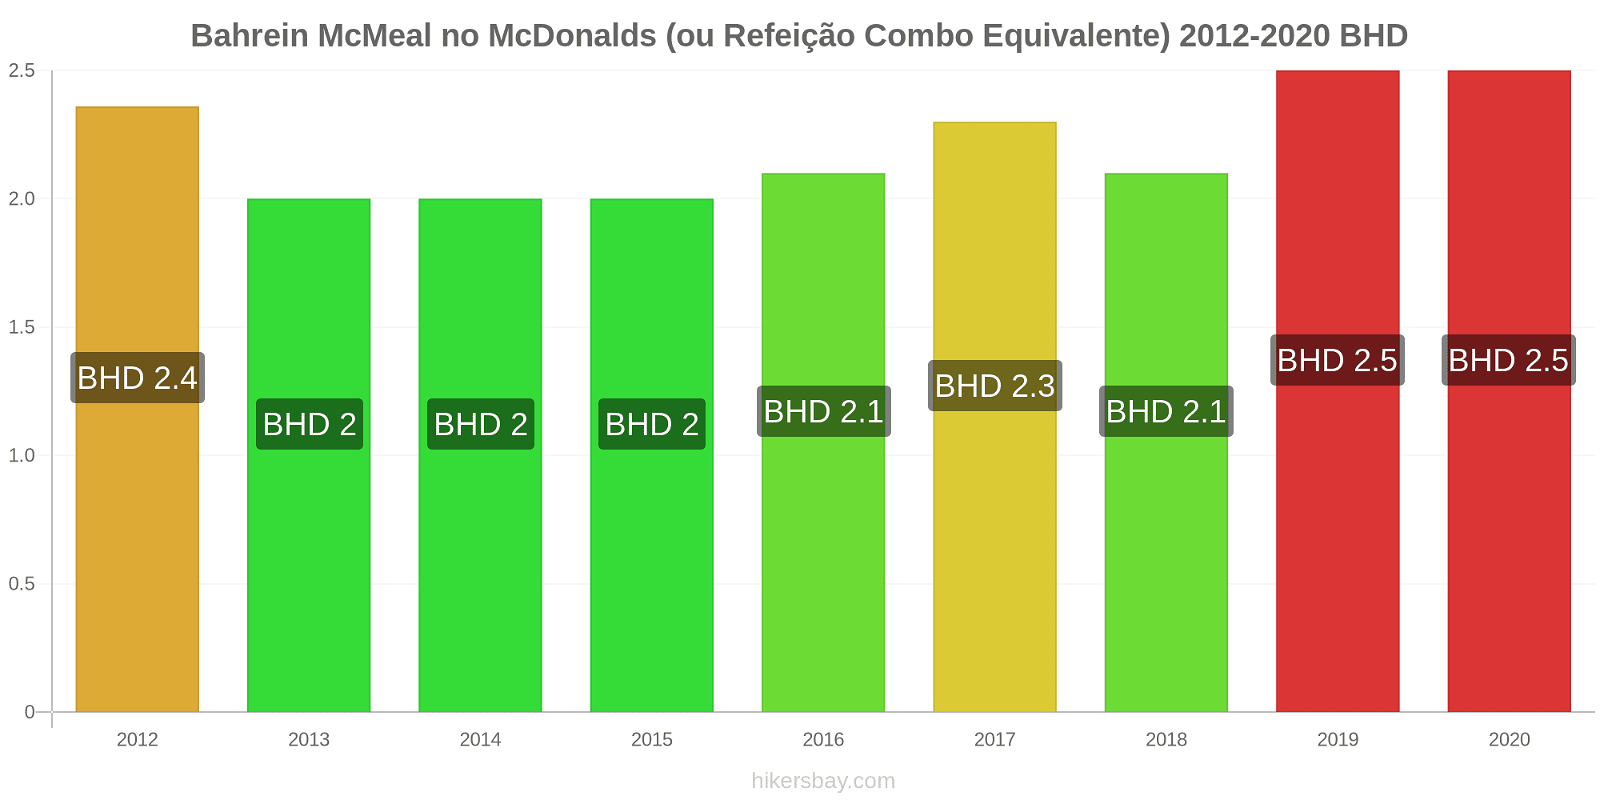 Bahrein variação de preço McMeal no McDonald ' s (ou refeição Combo equivalente) hikersbay.com